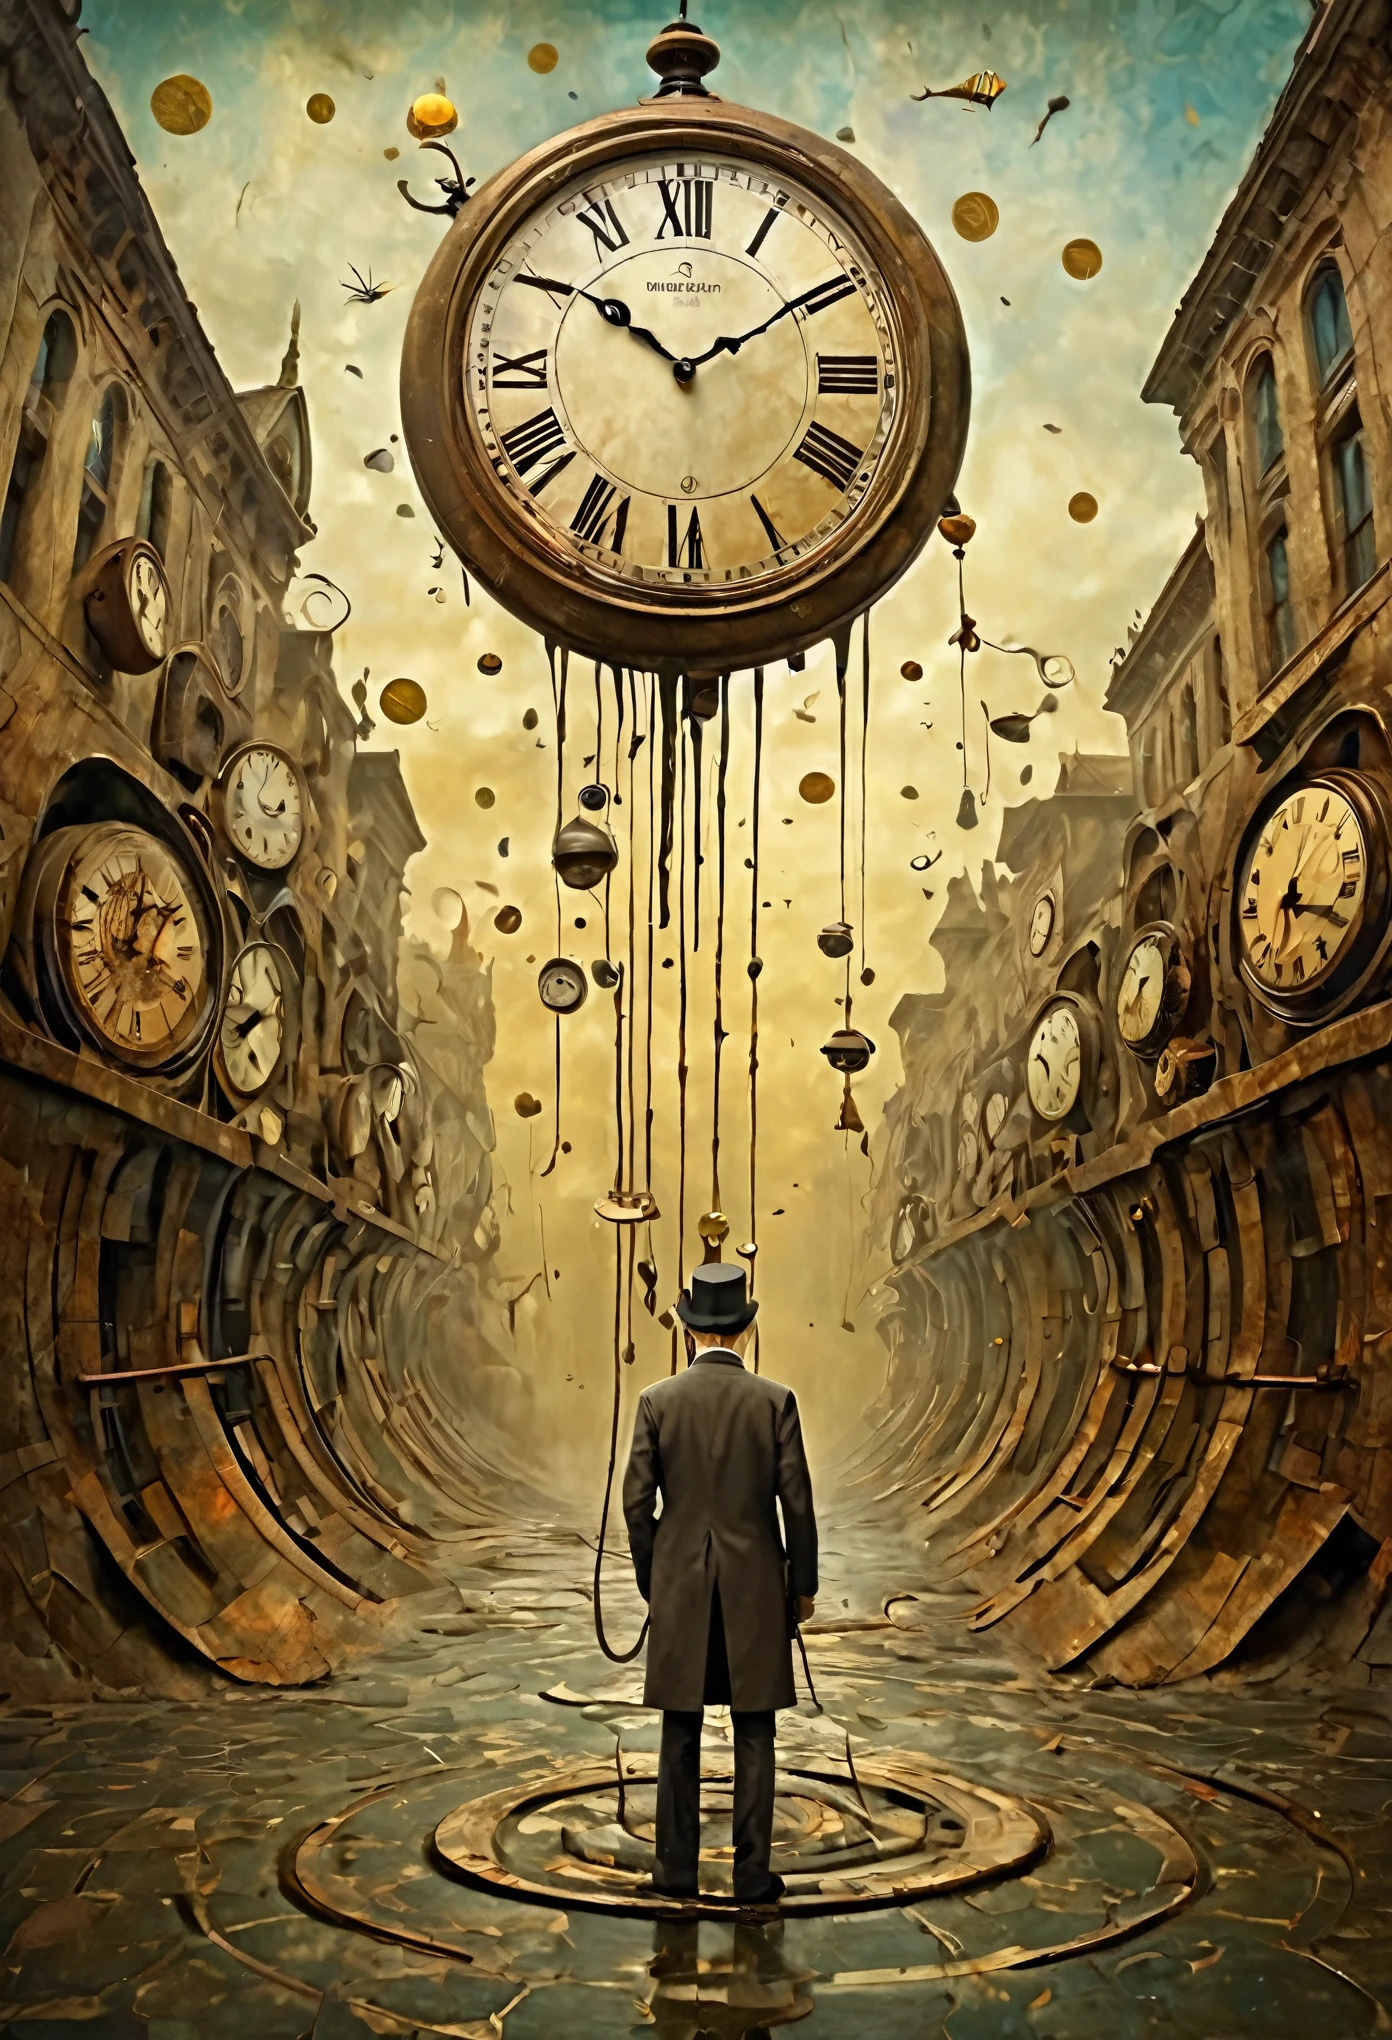 Néo surréalisme, de Gabriel Pacheco et Max Ernst, réalisme magique art bizarre, surréalisme pop,une scène surréaliste d&#39;horloges fondant et se pliant lors d&#39;un accident de voyage dans le temps, avec une personne prise dans la distorsion, art fantaisiste. 